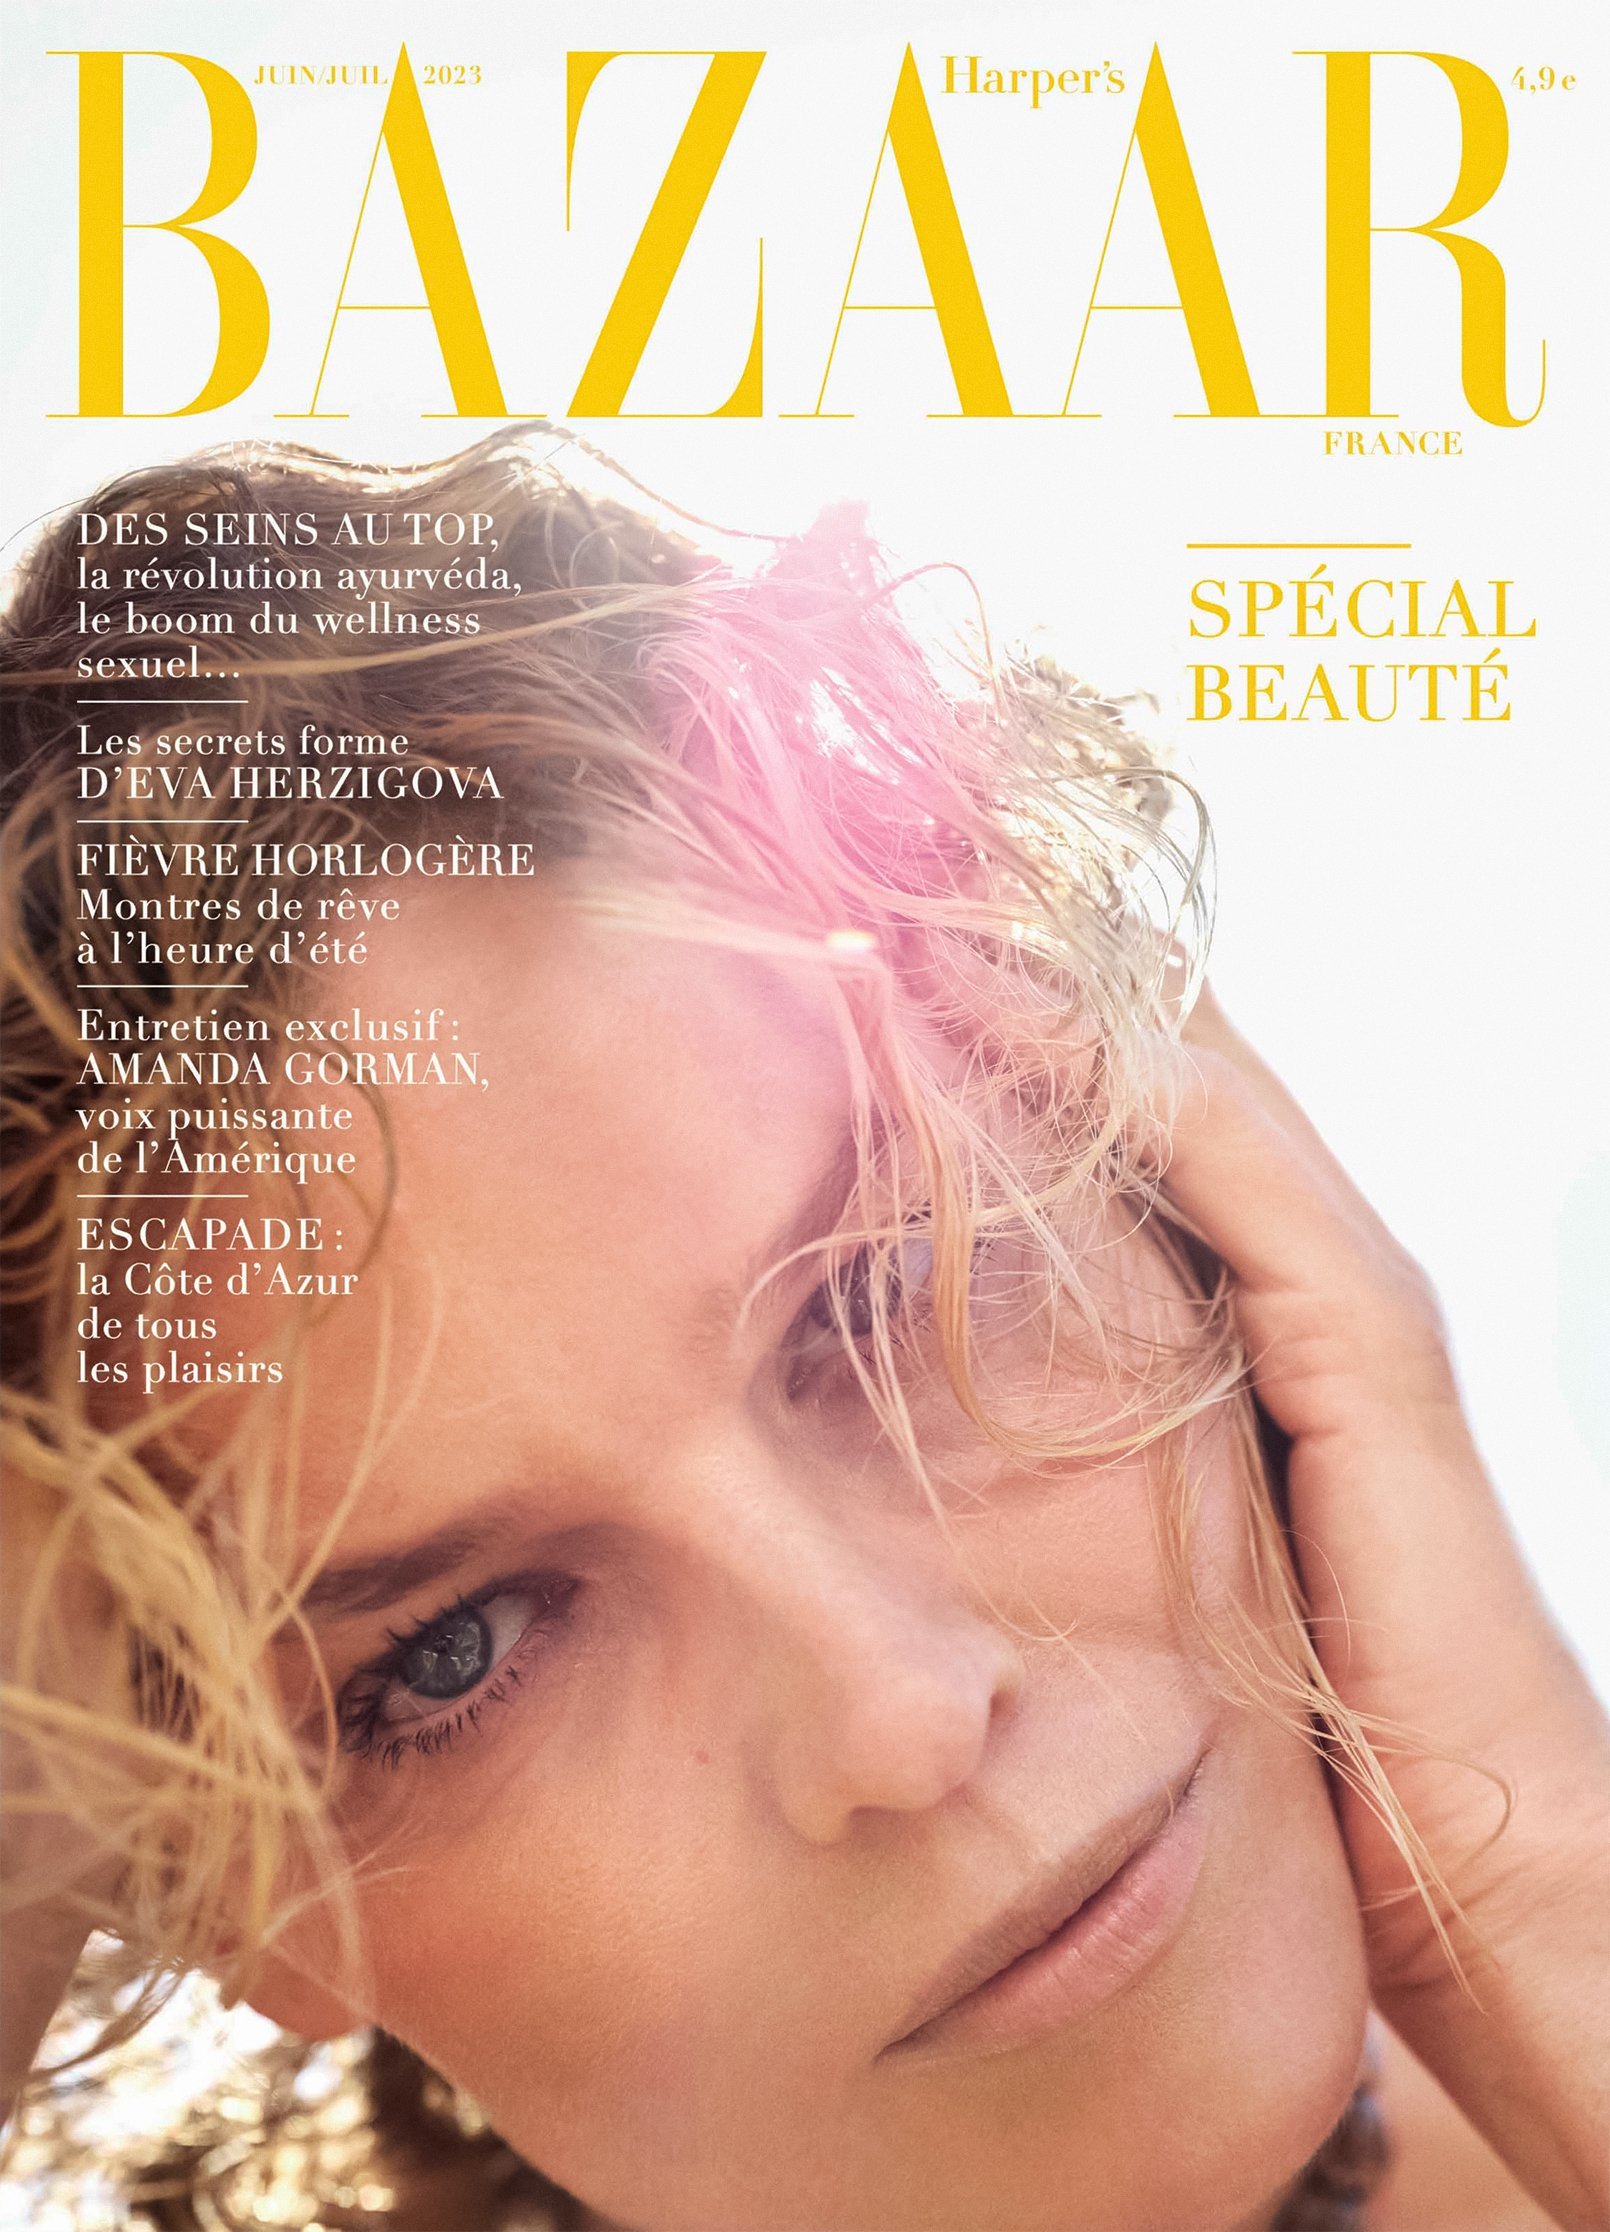 Harpers-Bazaar-June-July-2023-Covers-by-Mario-Sorrenti00002.jpeg